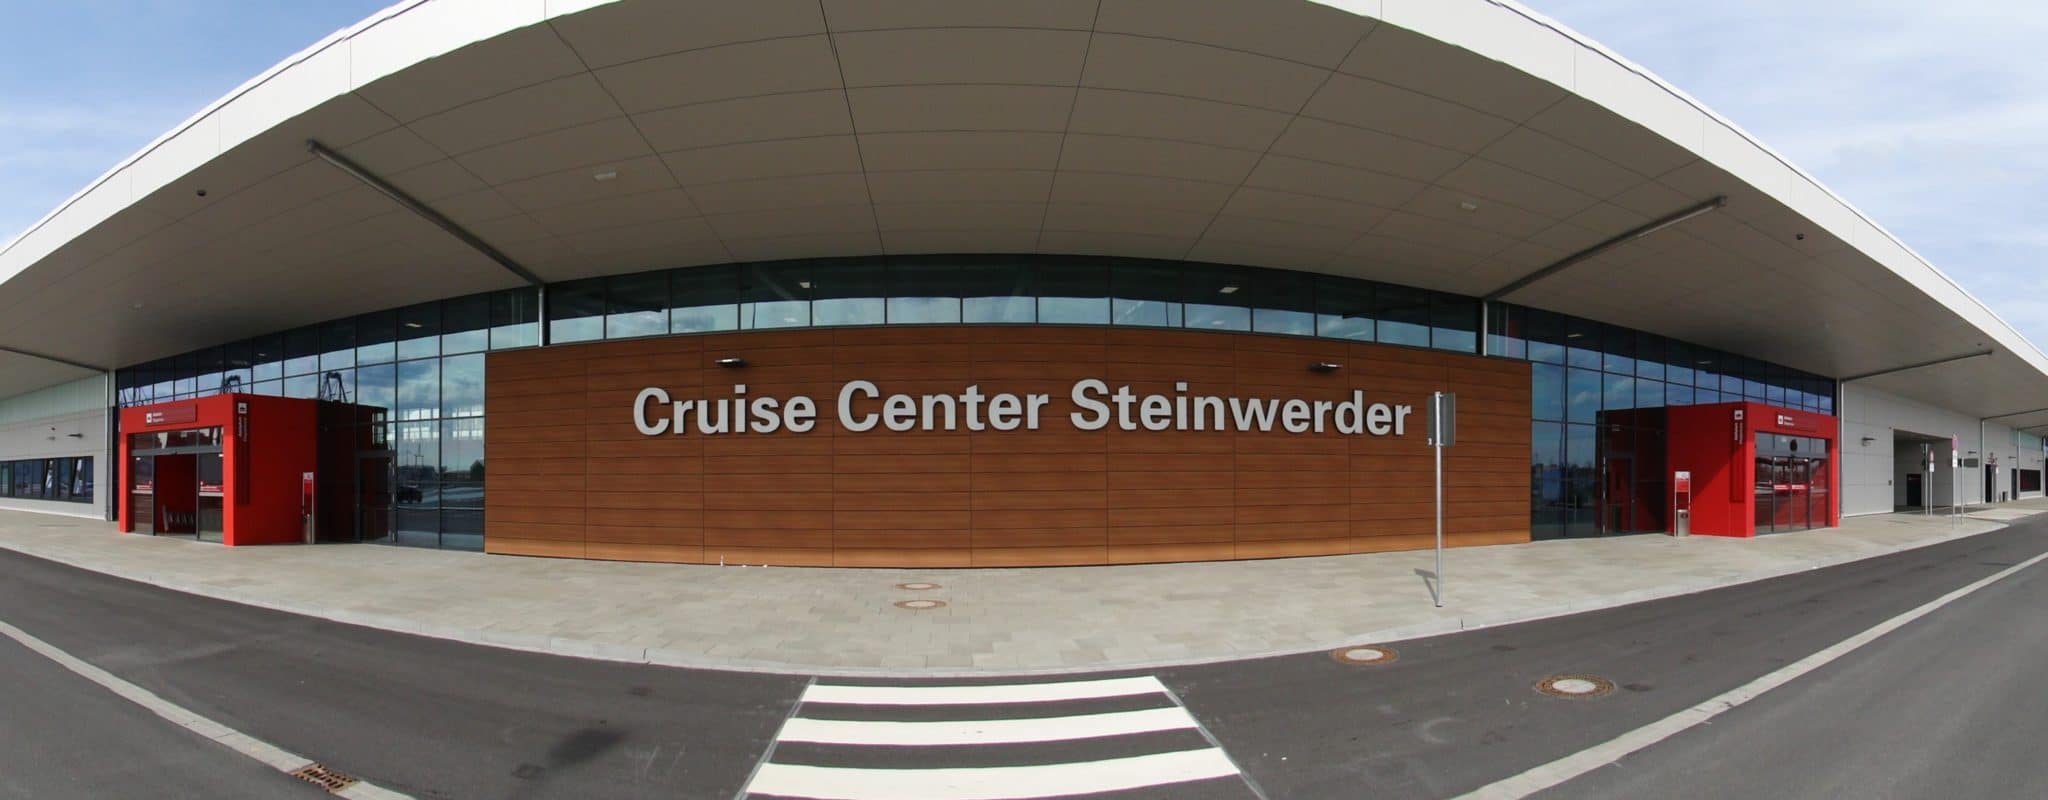 cruise center steinwerder taxi